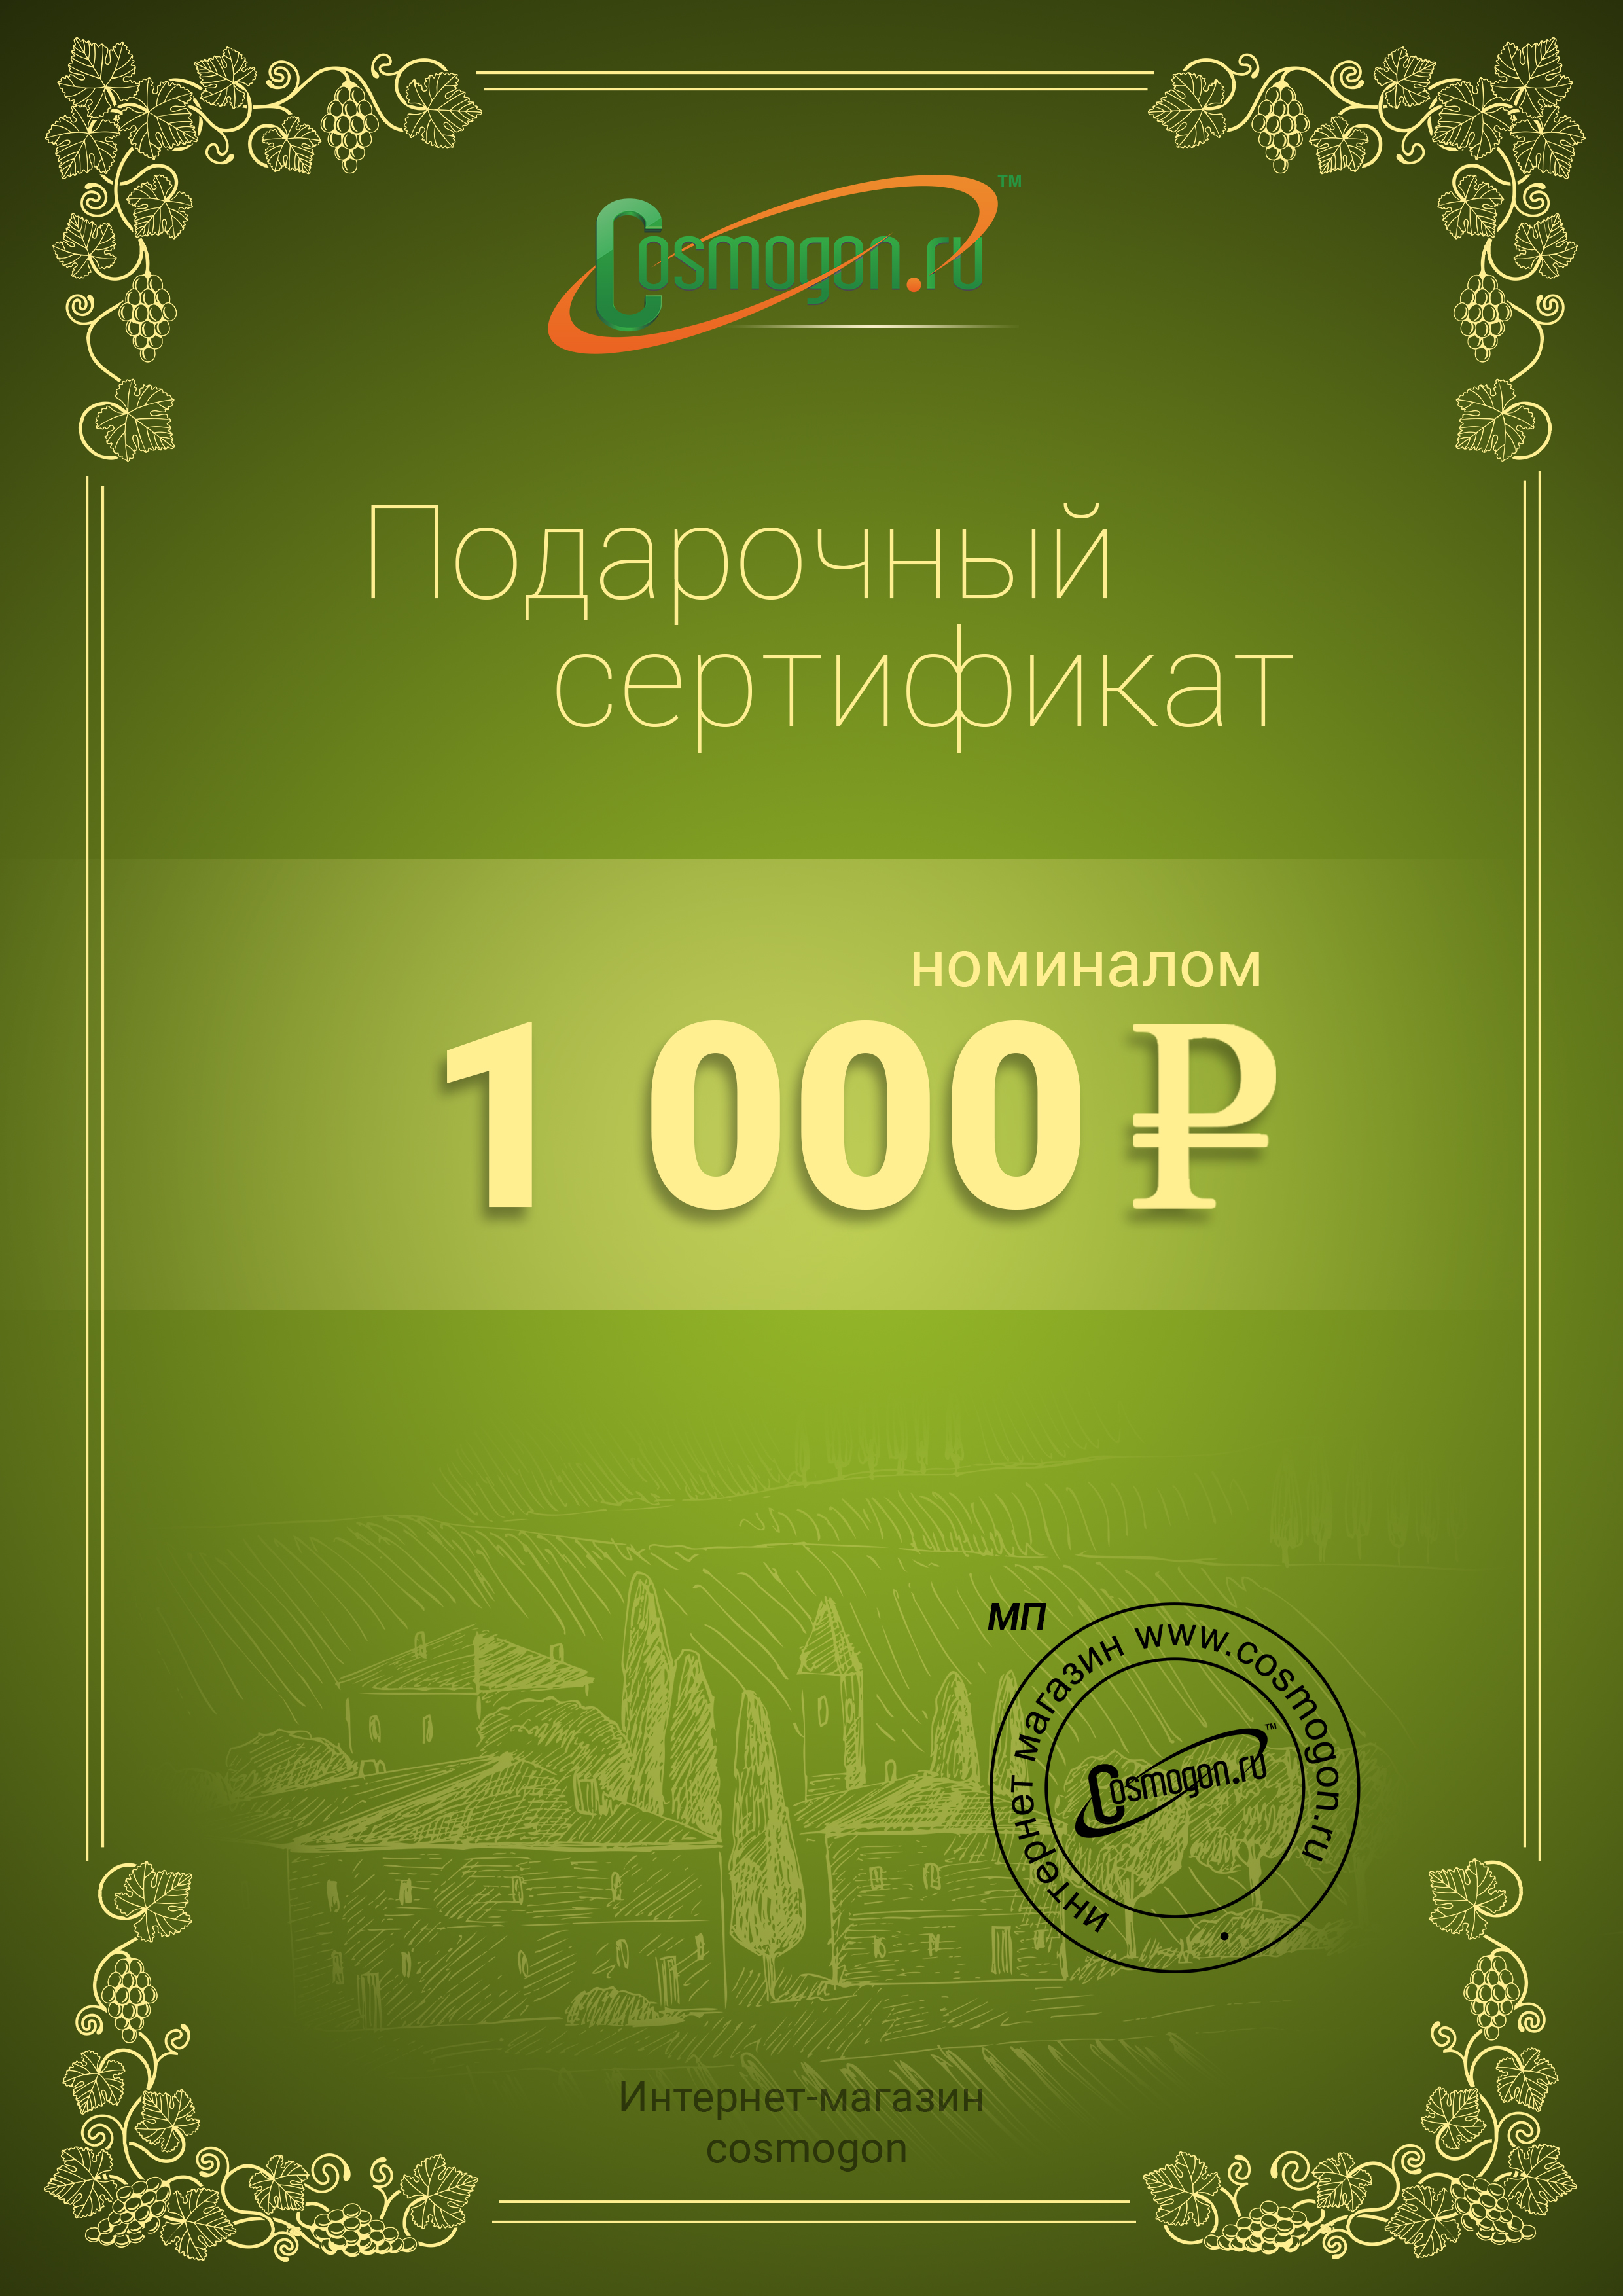 /products/podarochnyy-sertifikat-na-1000-rubley/